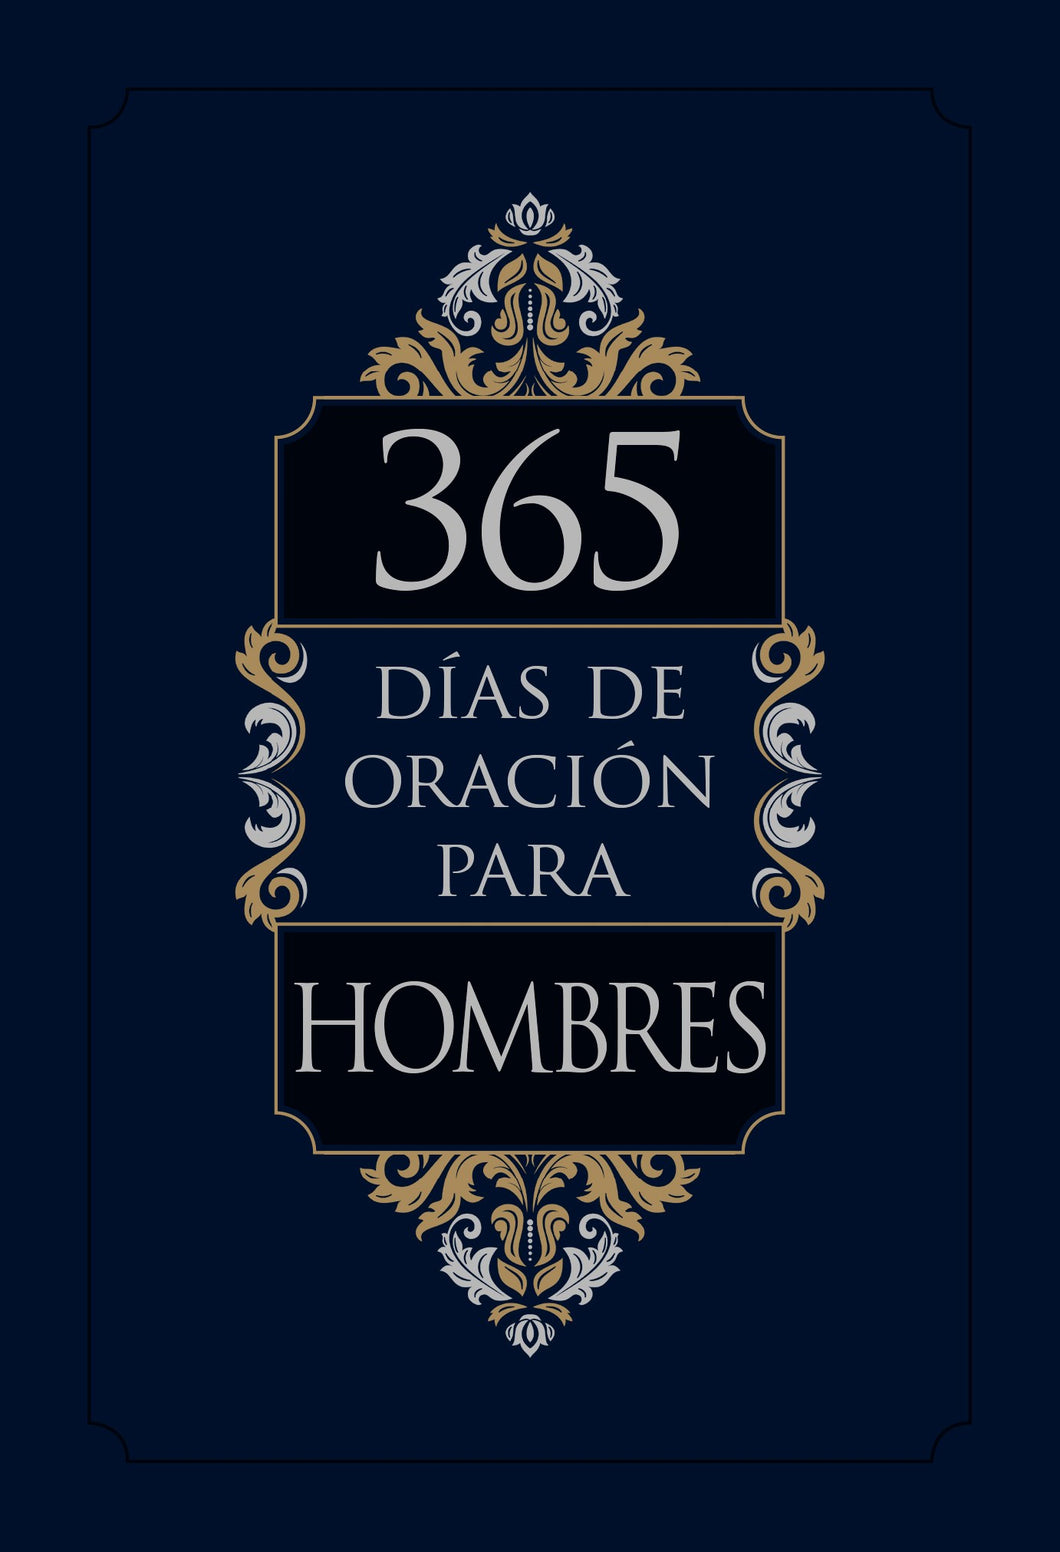 Spanish-365 Days Of Prayer For Men (365 dias de oracion para hombres)